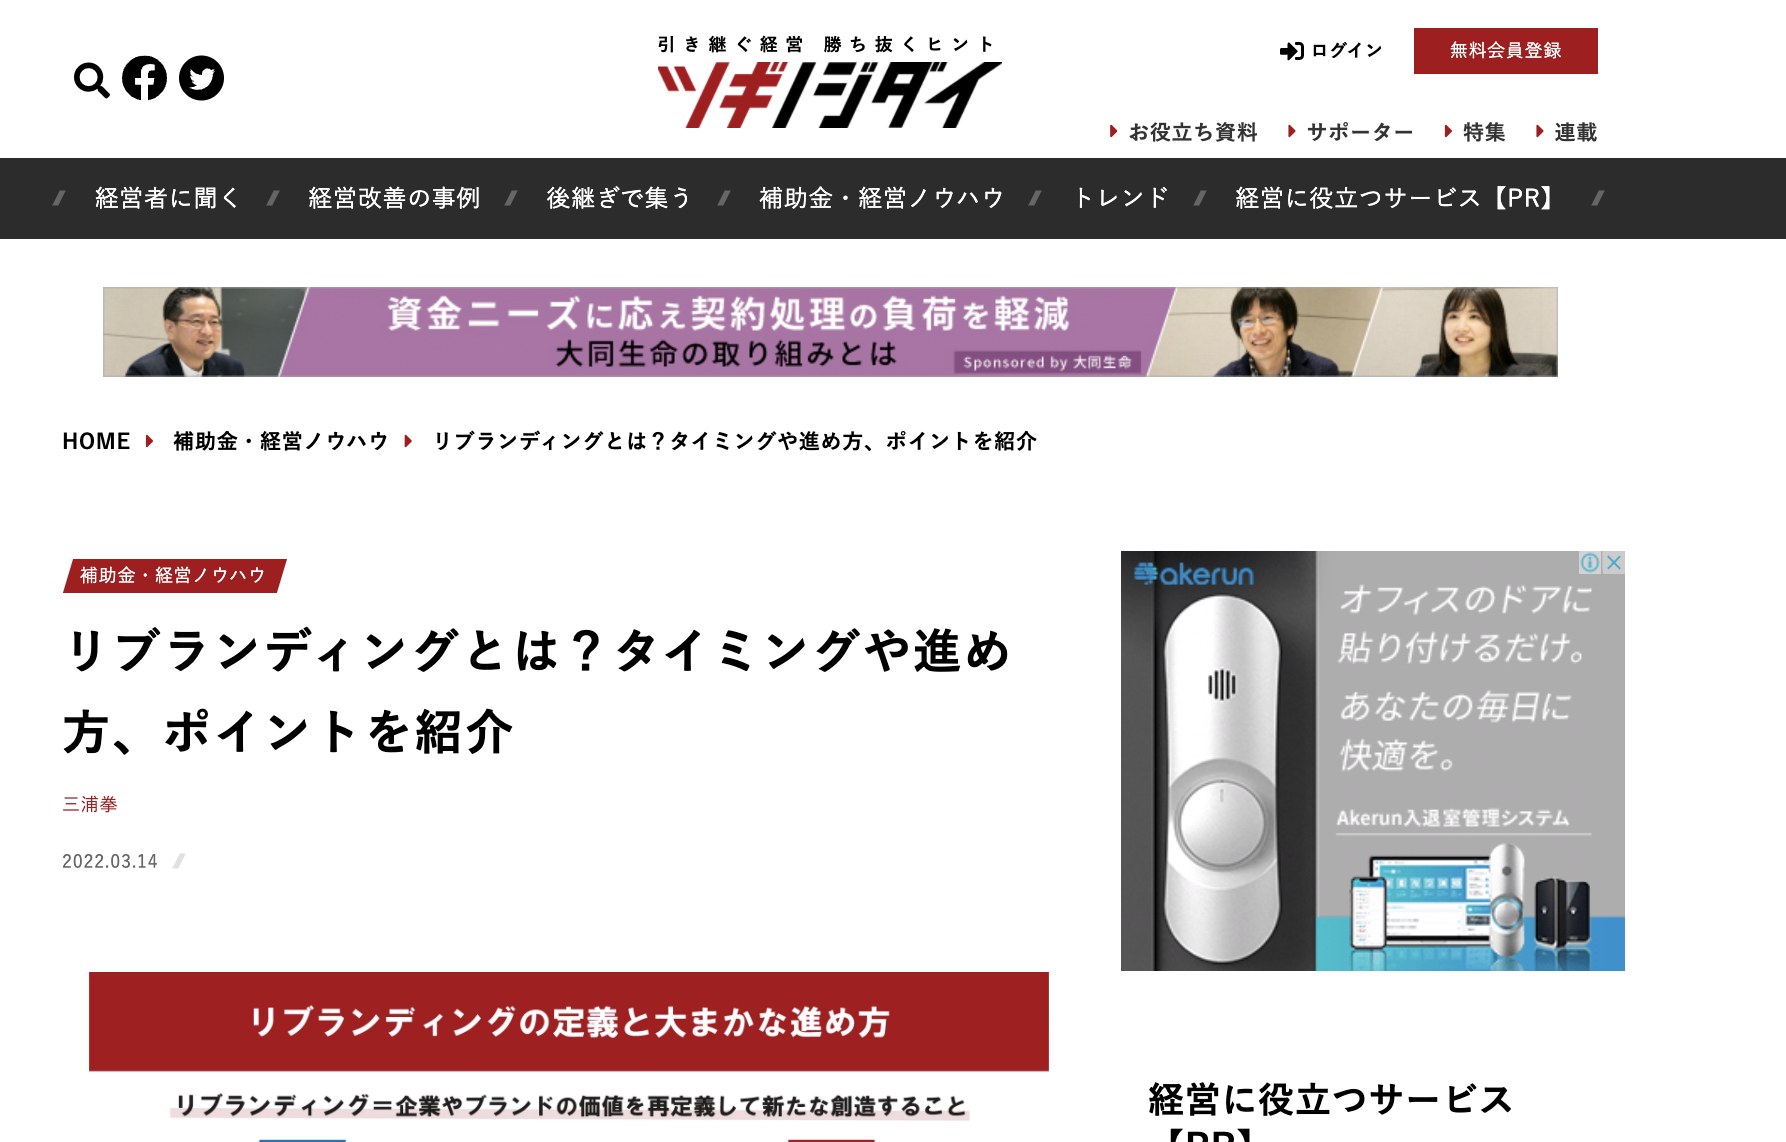 三浦が朝日新聞社のWEBメディアに寄稿しました。